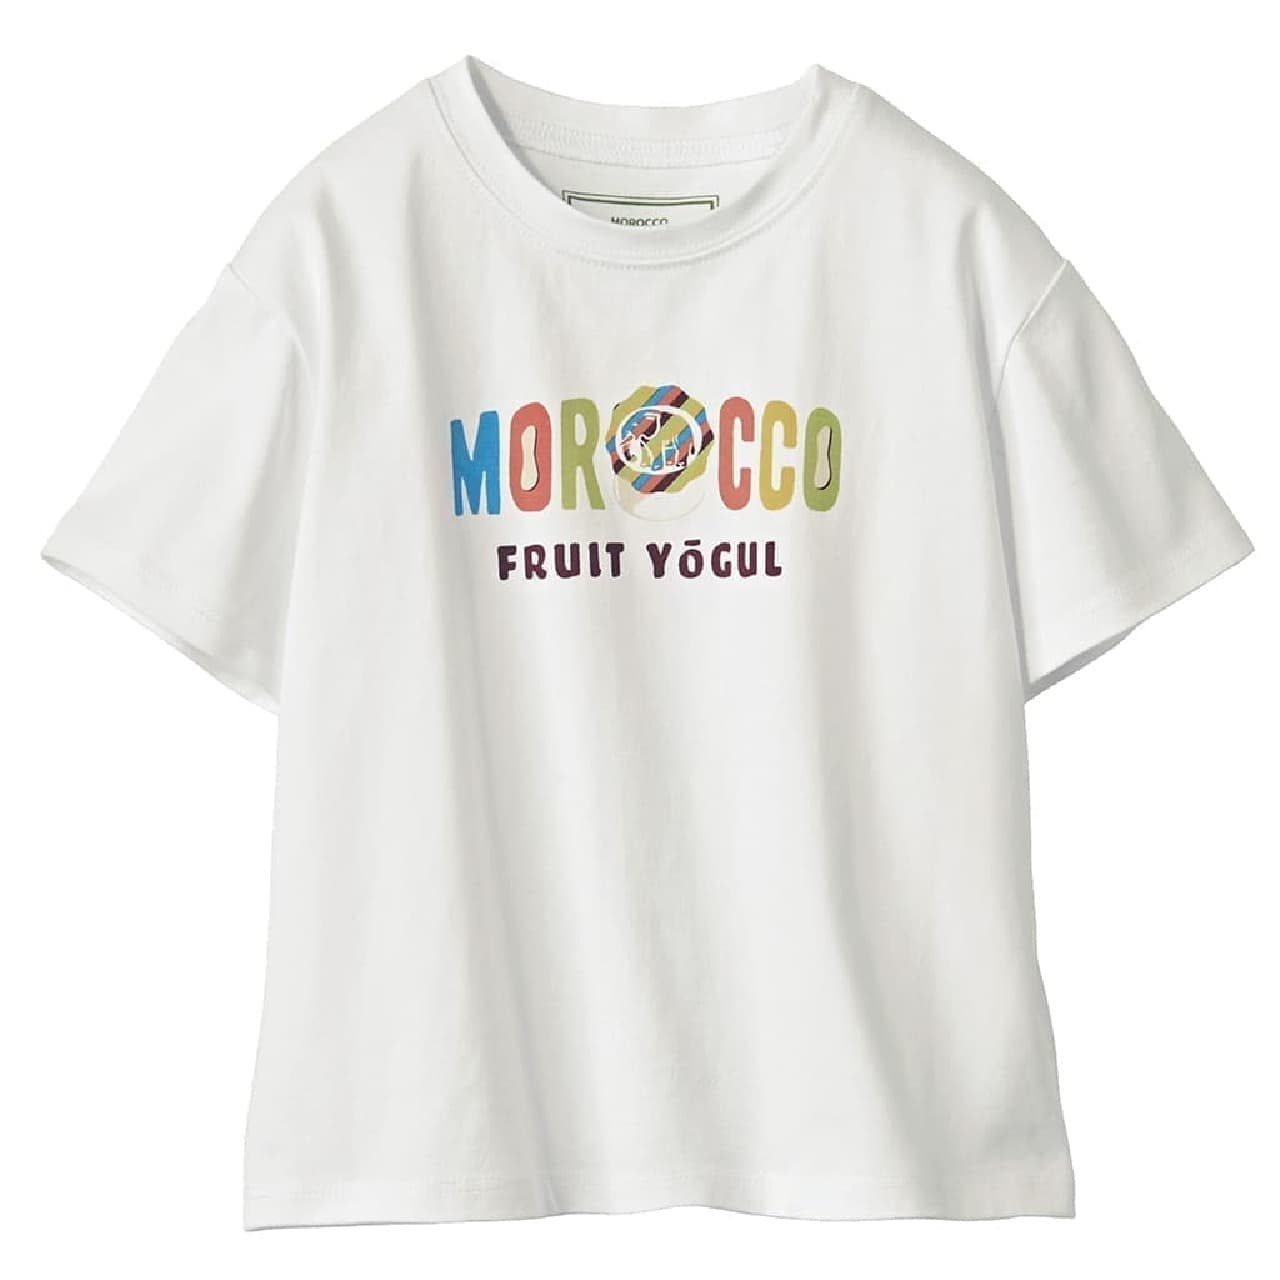 ベルメゾン「駄菓子コラボTシャツ」ウィットナンバーチョコ・モロッコフルーツヨーグルをデザイン